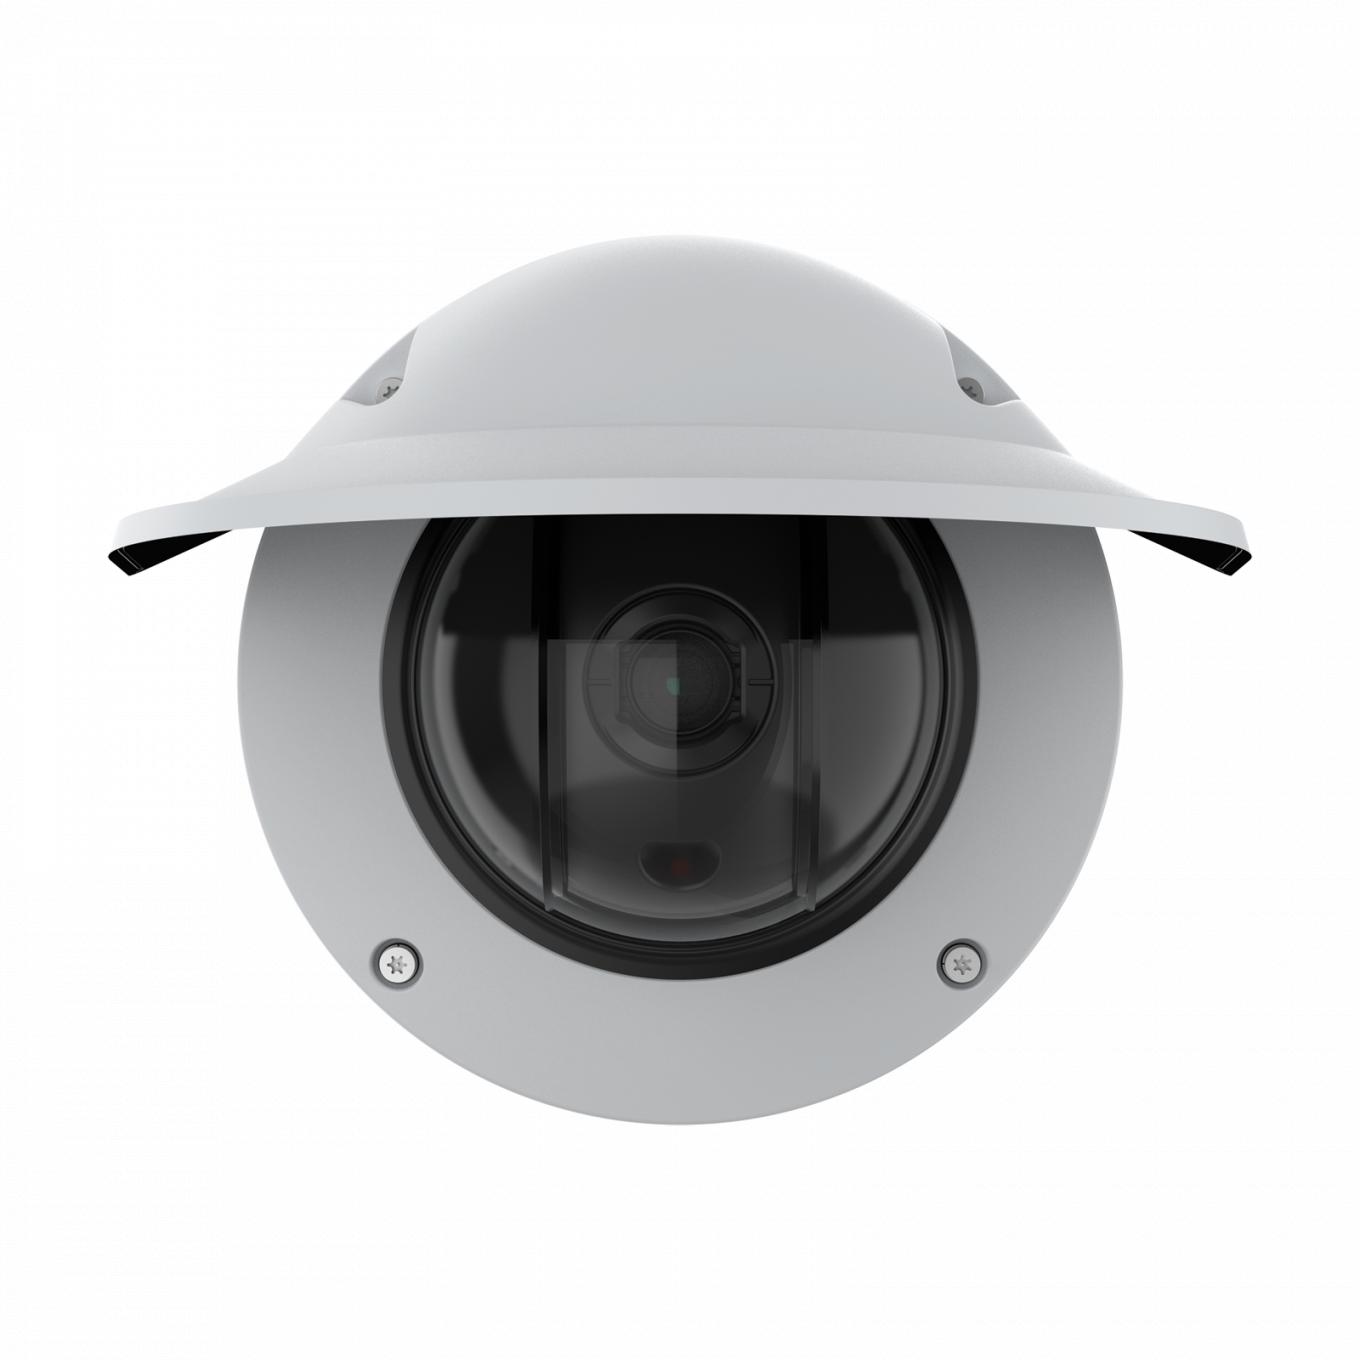 Купольная камера AXIS Q3536-LVE Dome Camera с погодозащитным козырьком, вид спереди